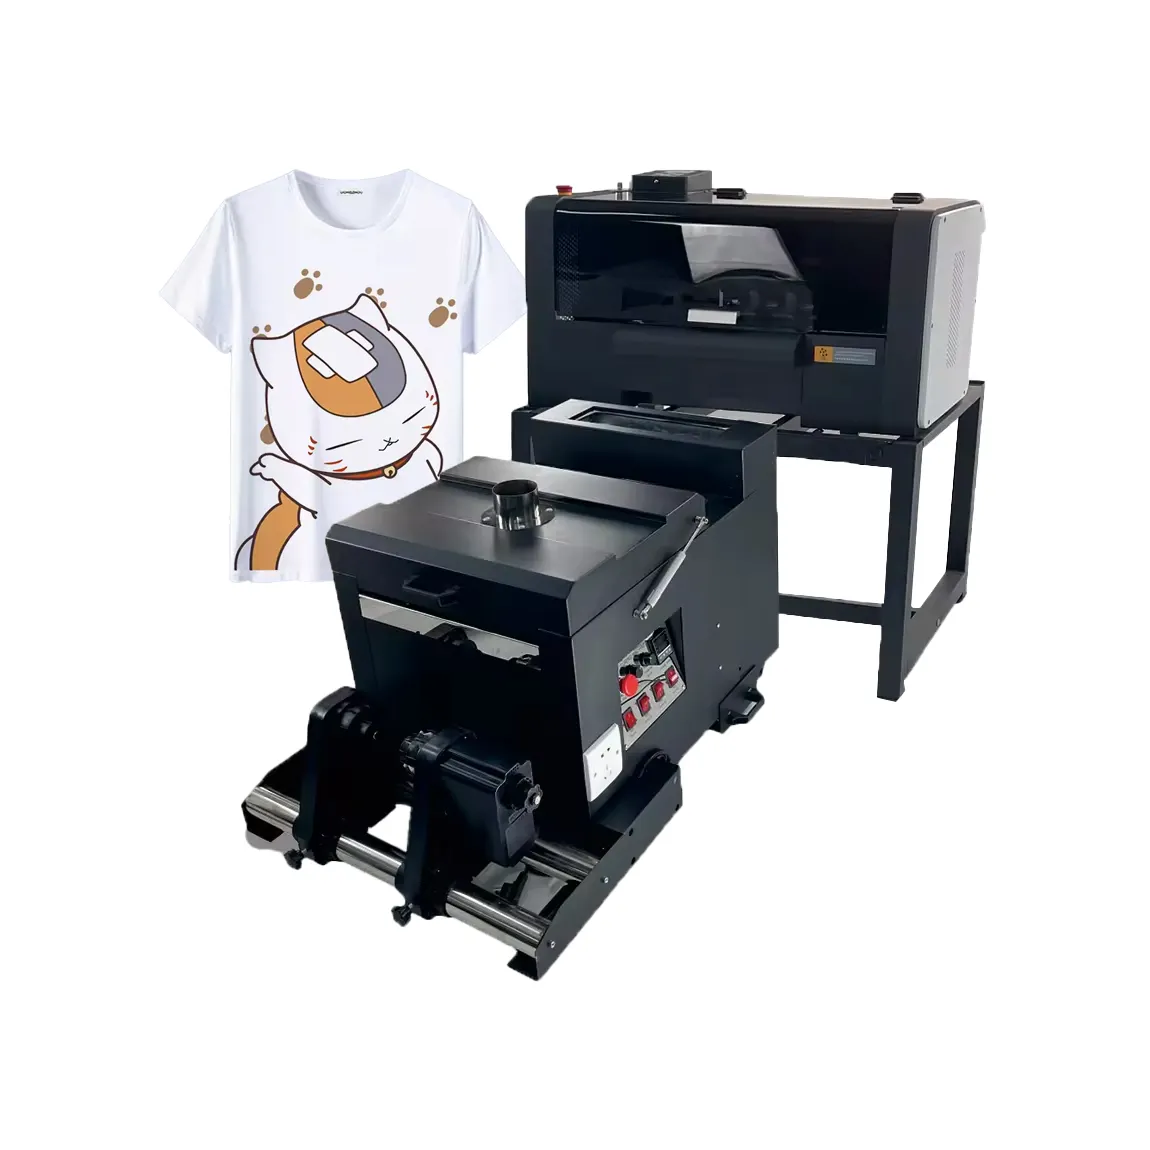 Простая в управлении цифровая текстильная футболка 30 см 2 Xp600 печатающая головка Impresora Dtf принтер шейкер A3 A4 A2 Dtf принтер машина